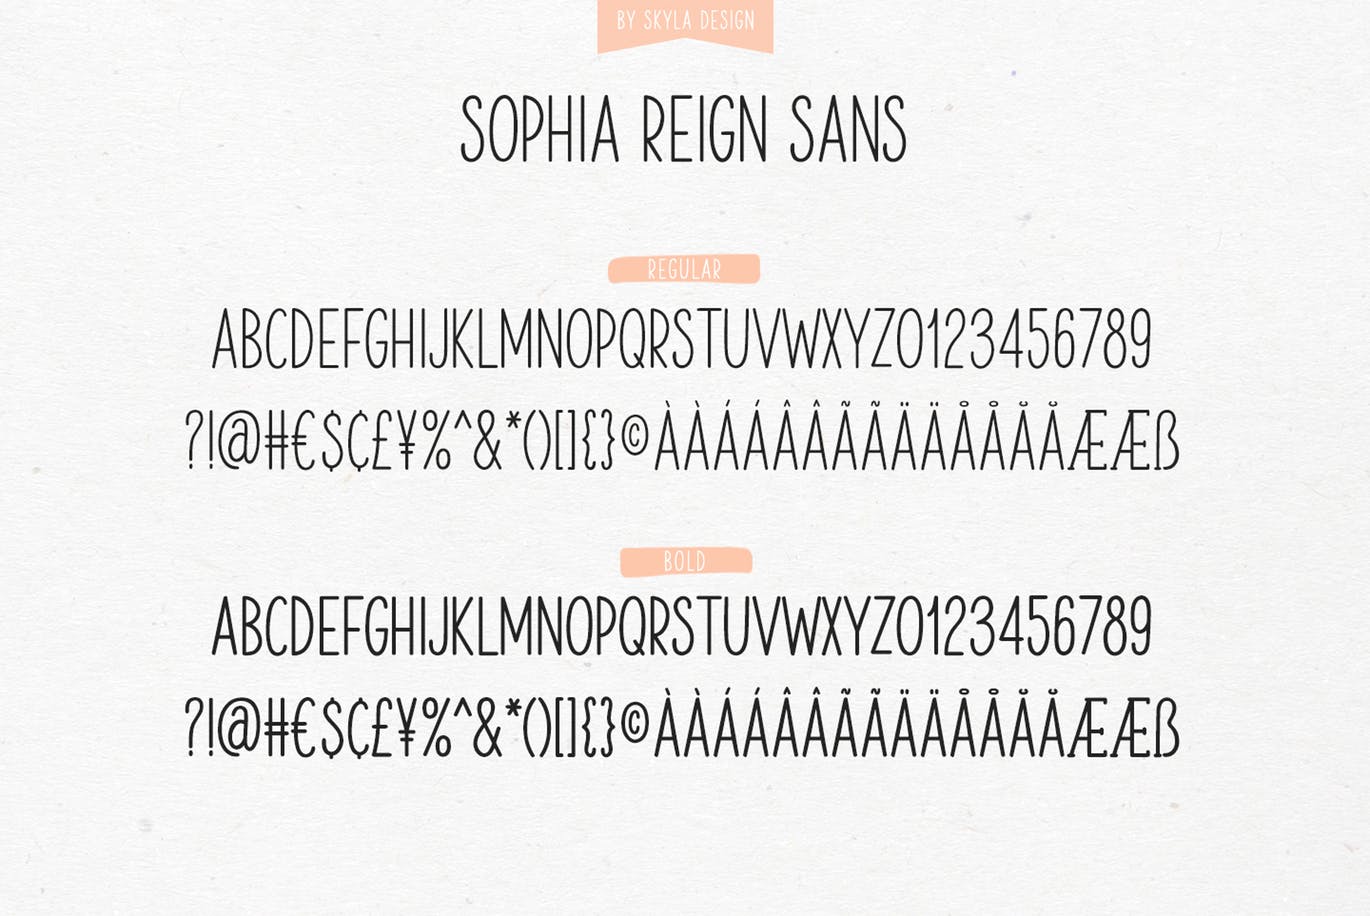 英文钢笔签名字体16素材精选&大写字母正楷字体16素材精选二重奏 Sophia Reign signature font duo插图(1)